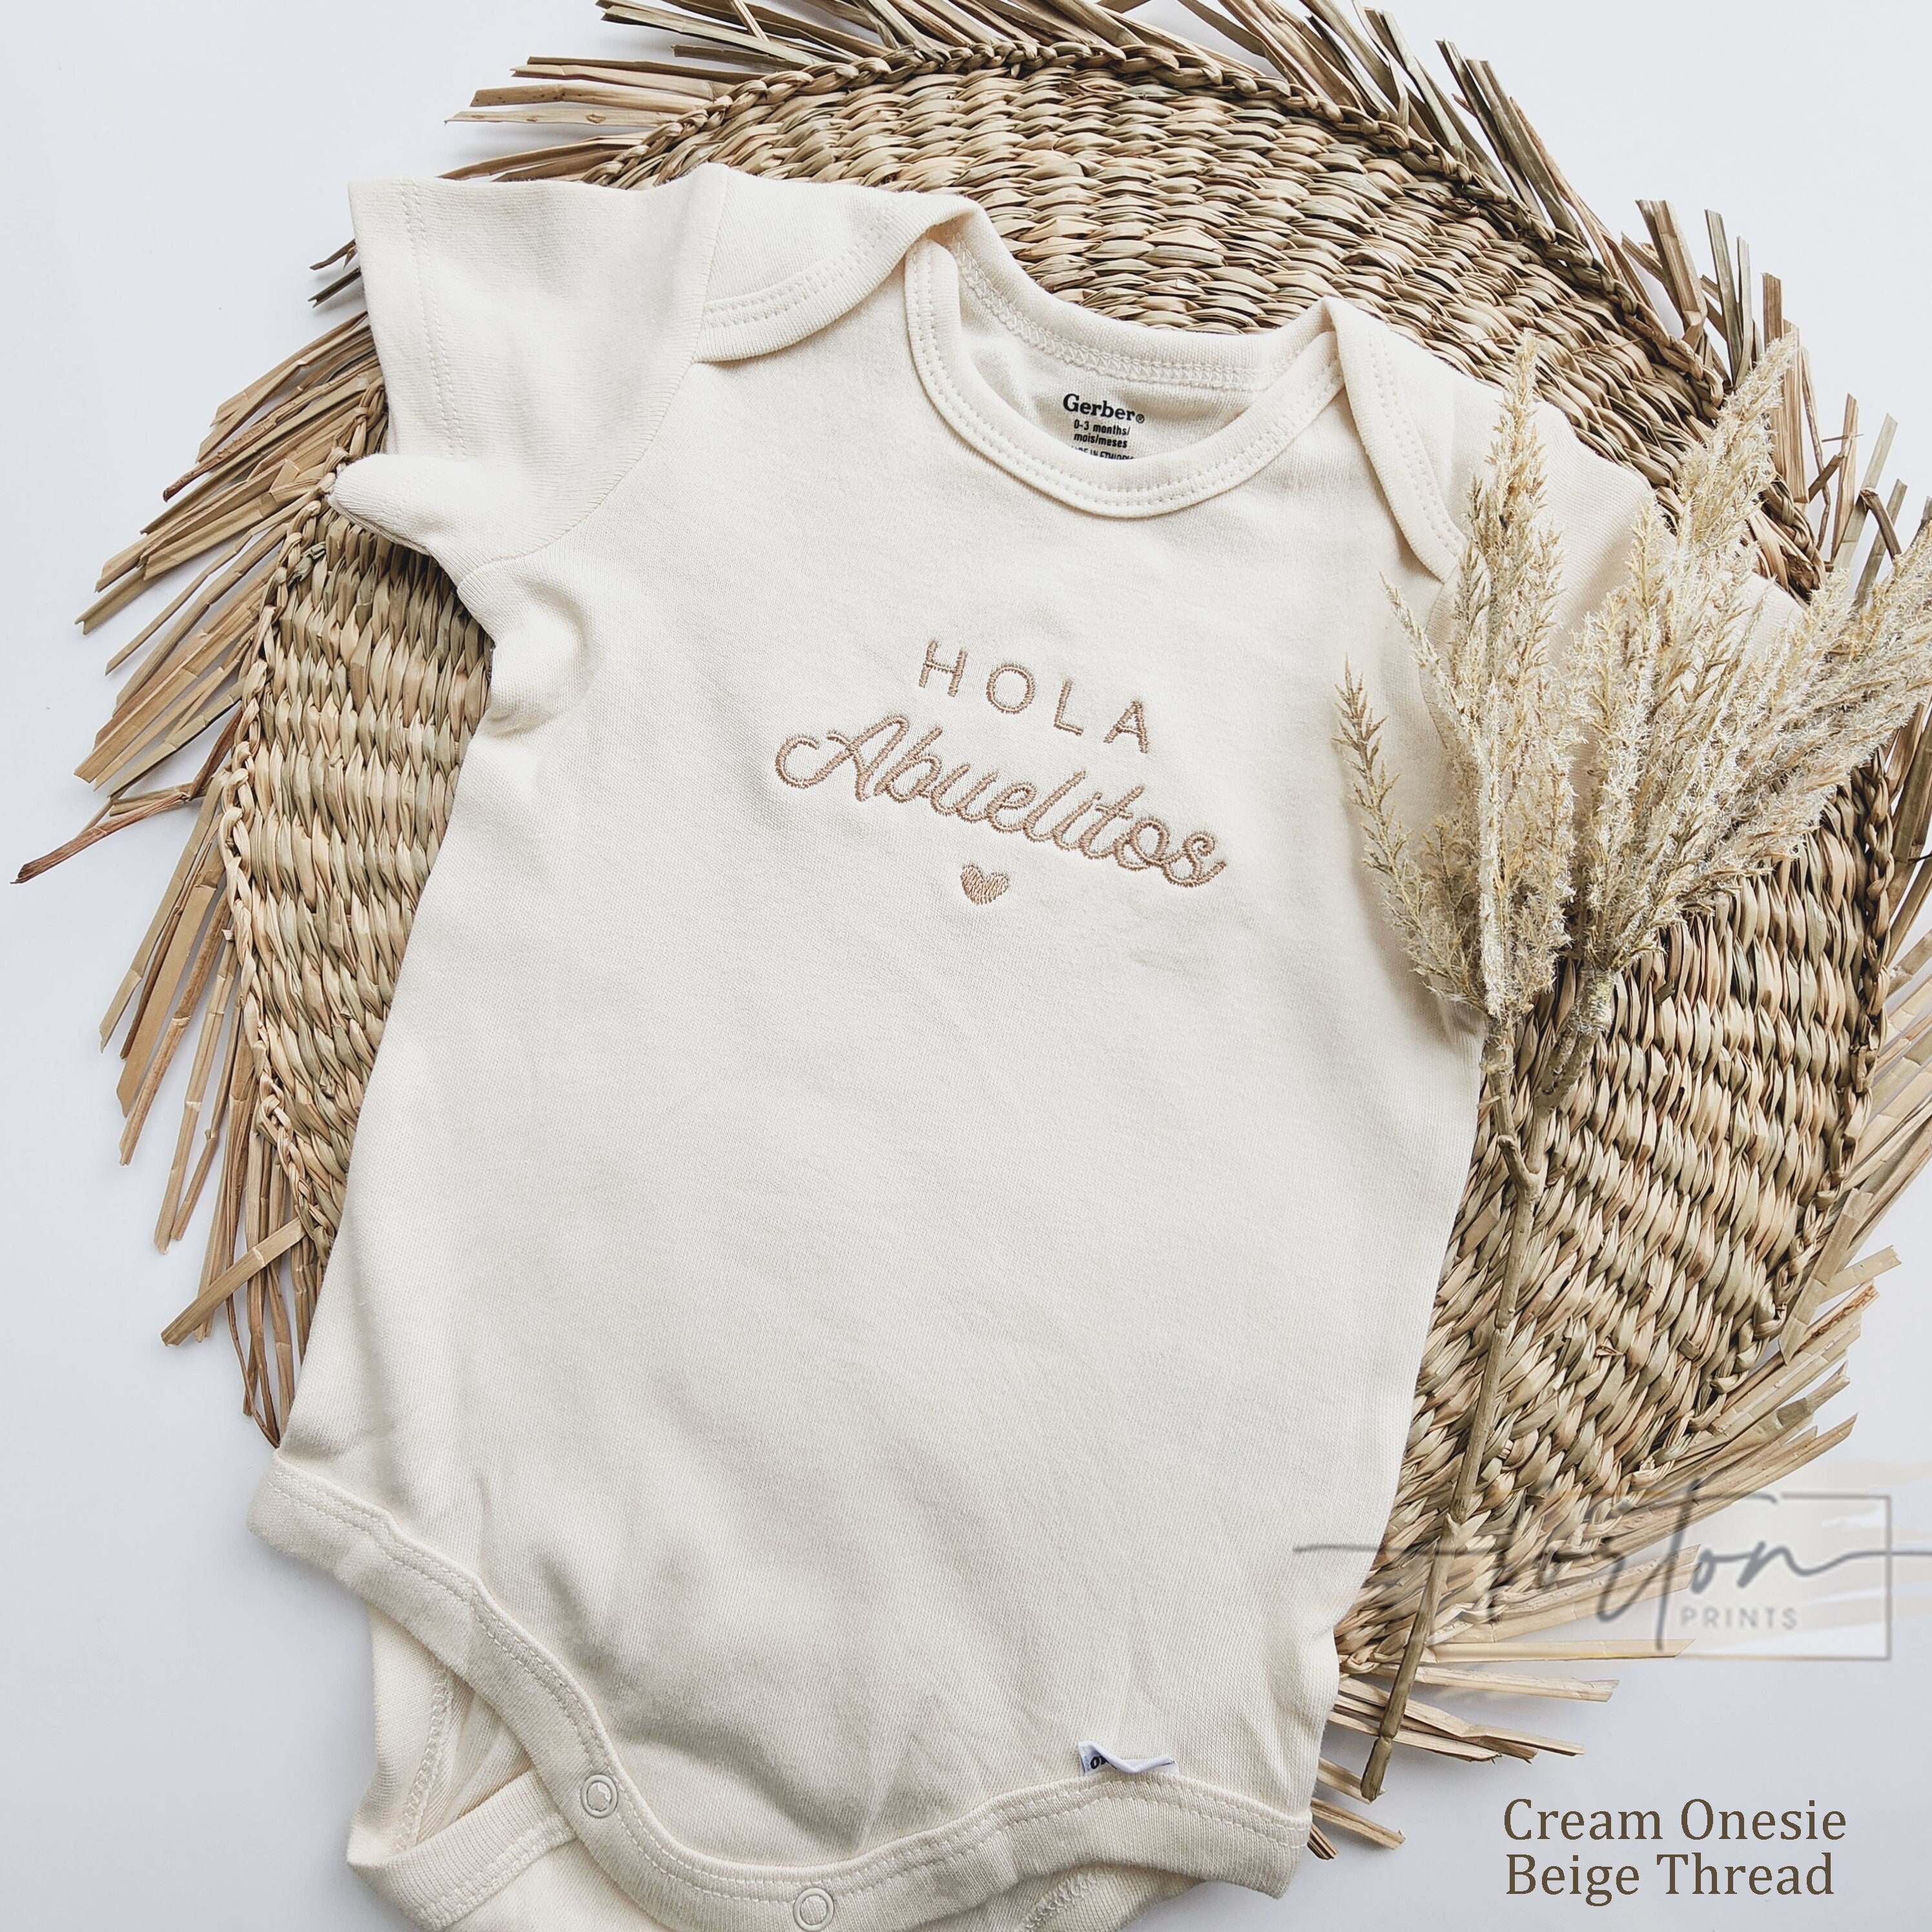 Hola Pica Cola Onesie, Baby Boy Outfit, Regalo para Baby Boy, Baby Outfit  en español, Latino Baby Onesie, Funny Onesie -  España